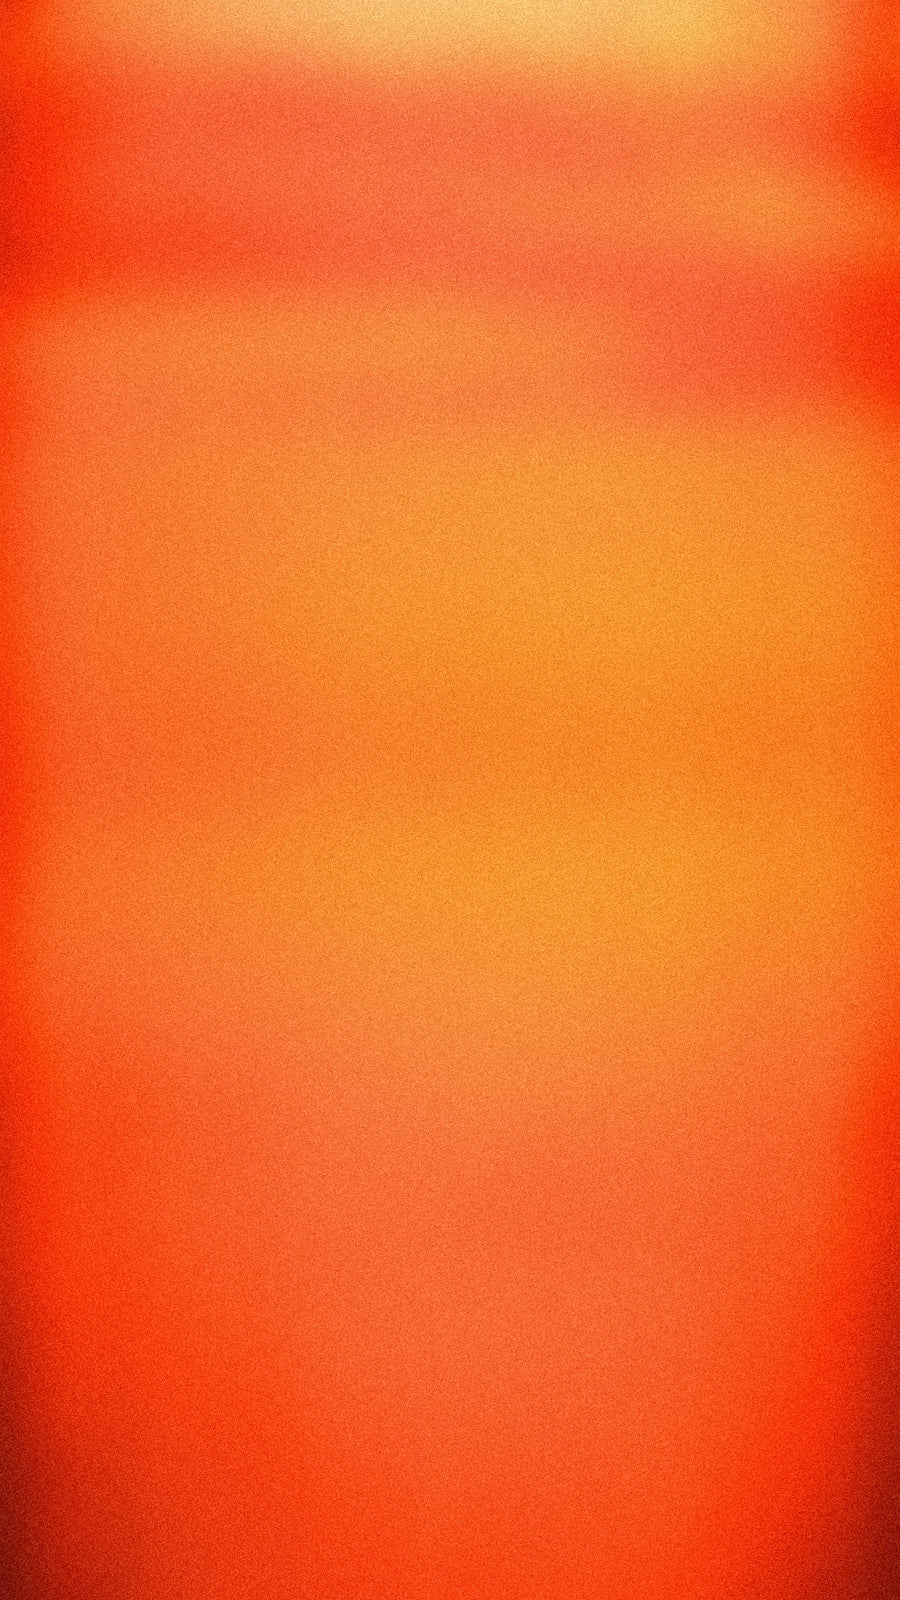 Orange abstract sunset